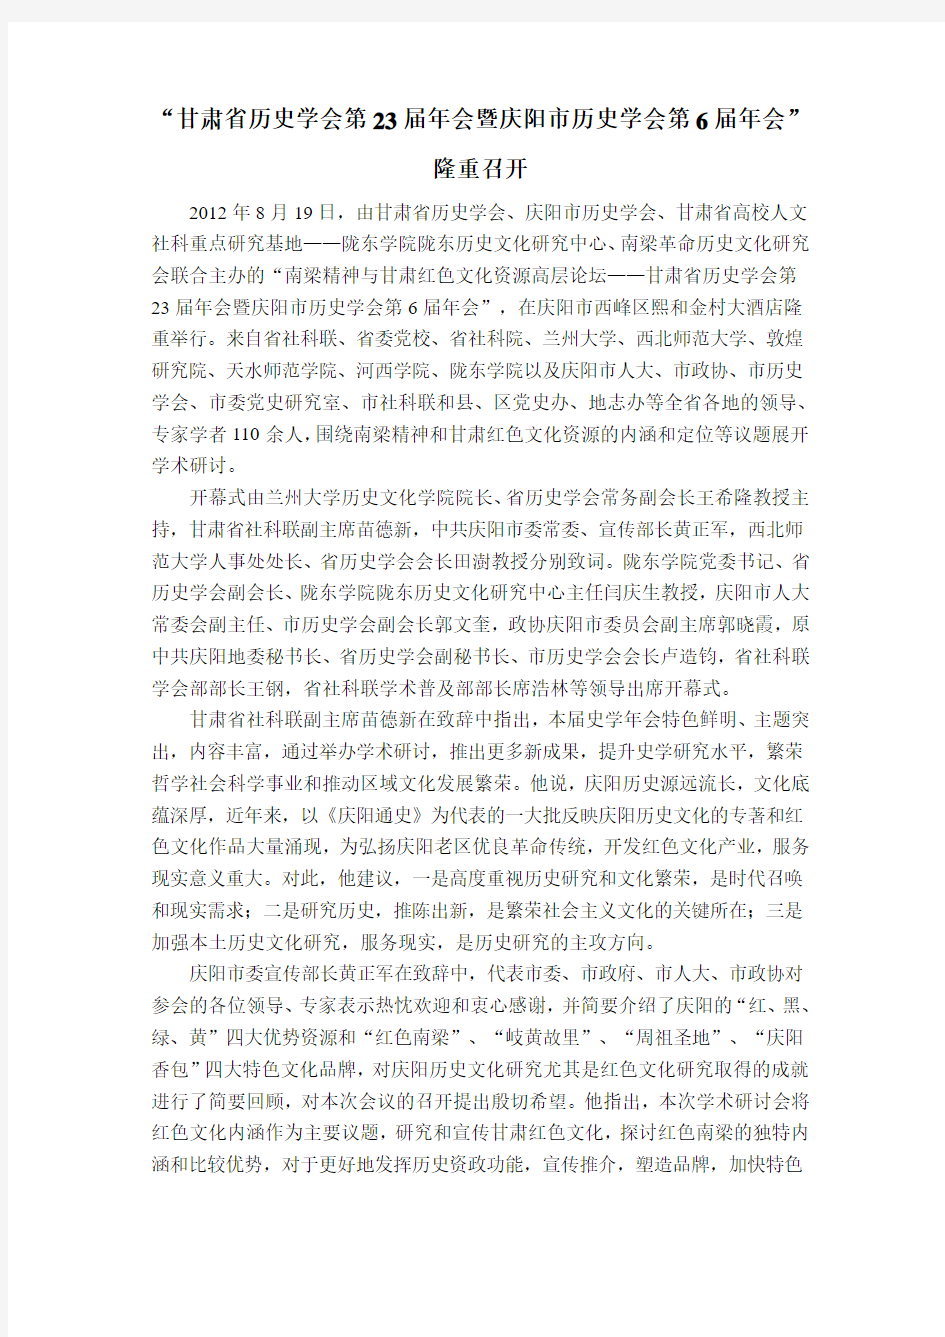 甘肃省第23届历史学年会M新闻报道(马啸老师修改意见)icrosoft Word 文档